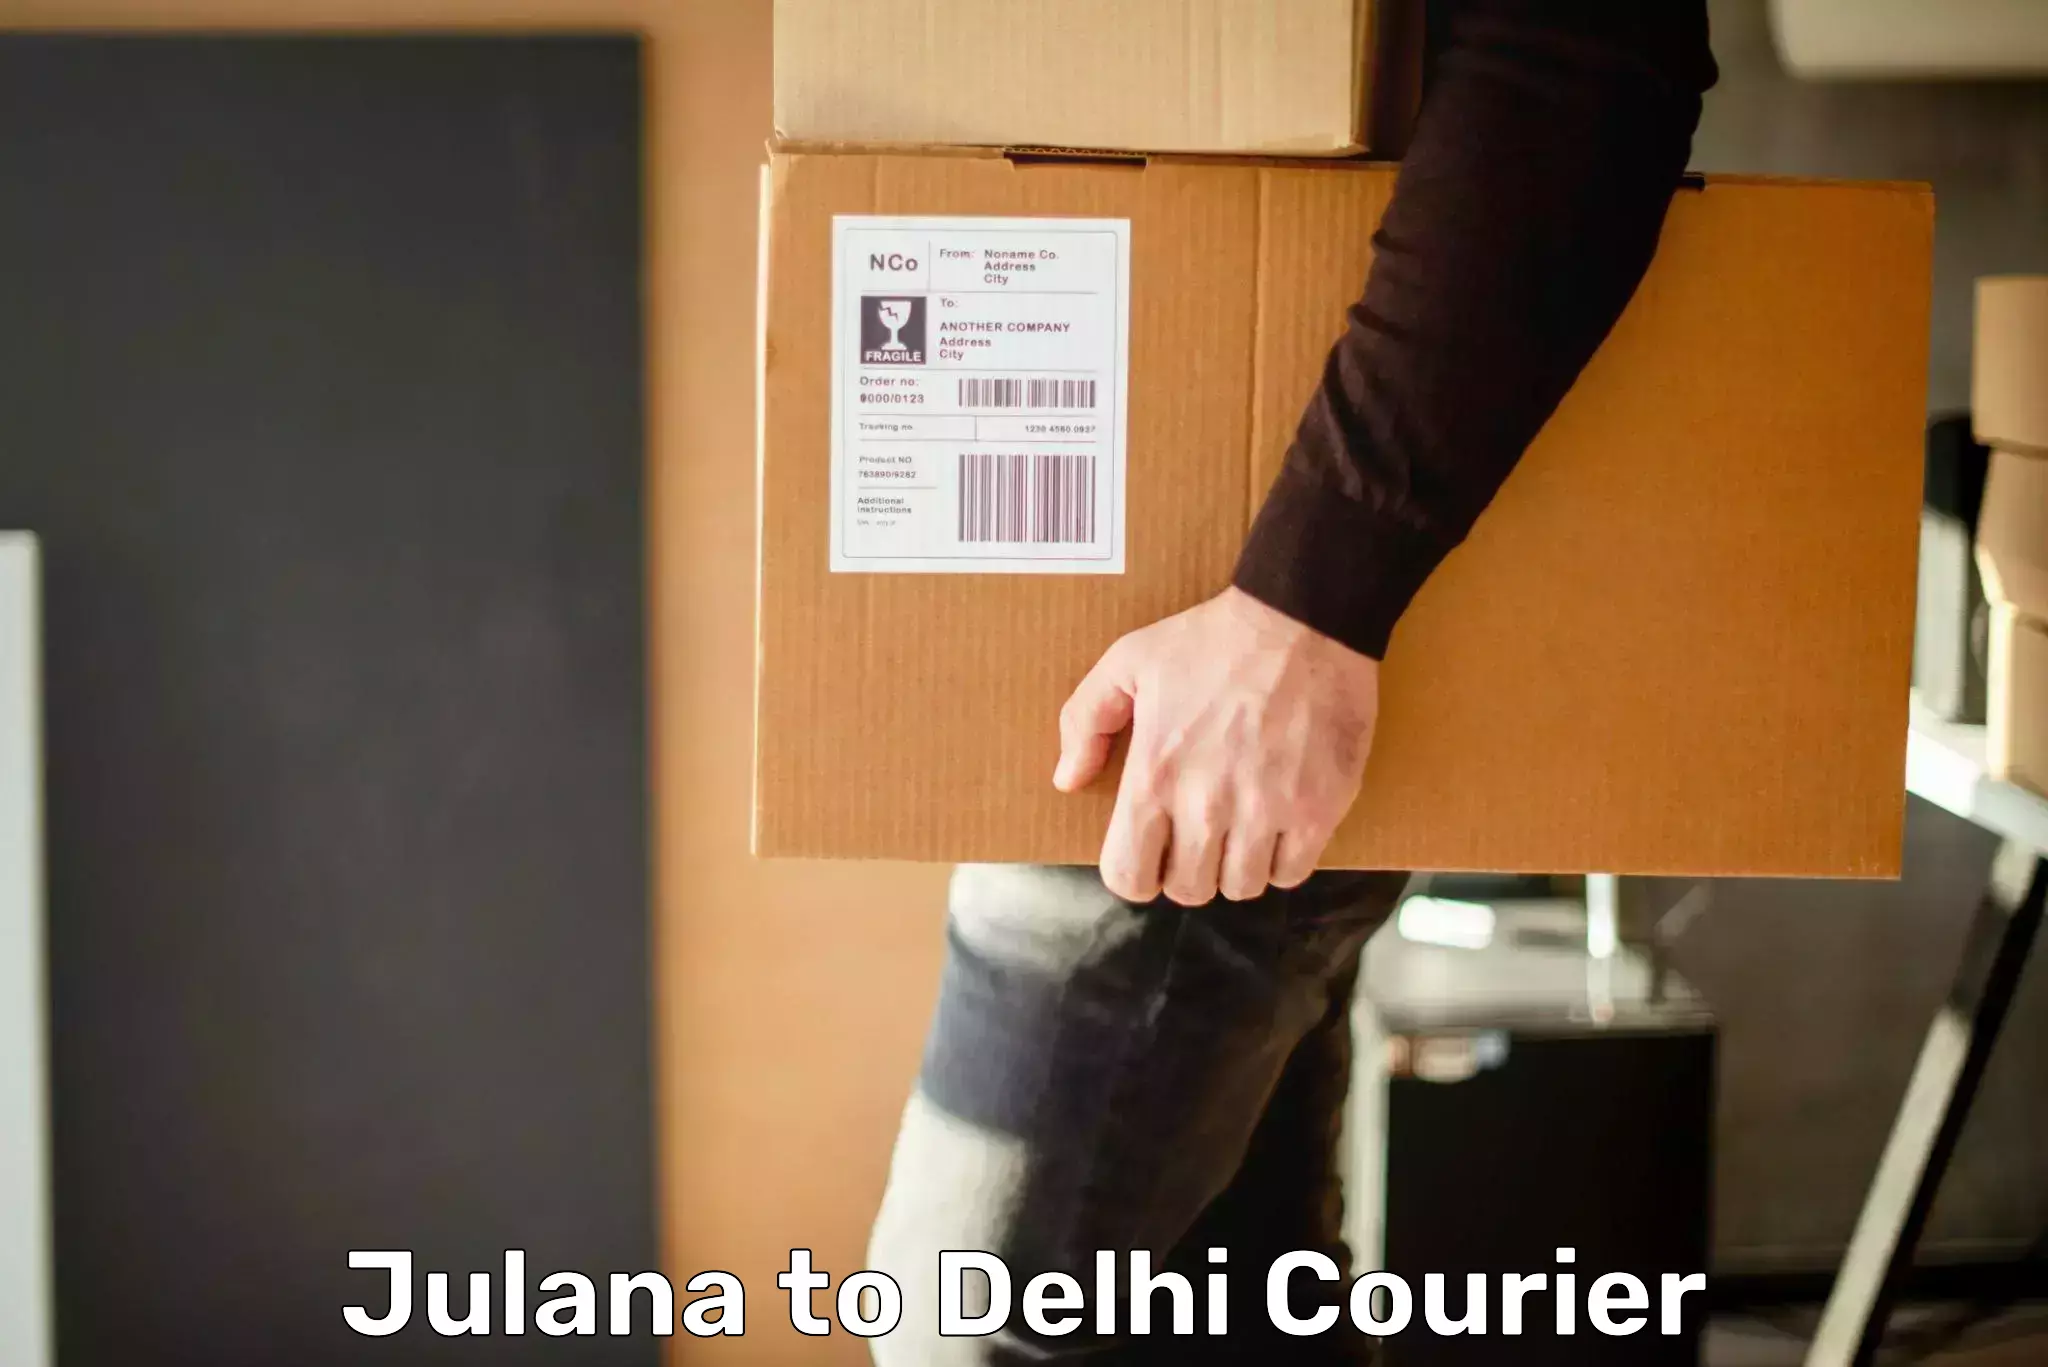 Express logistics service Julana to Delhi